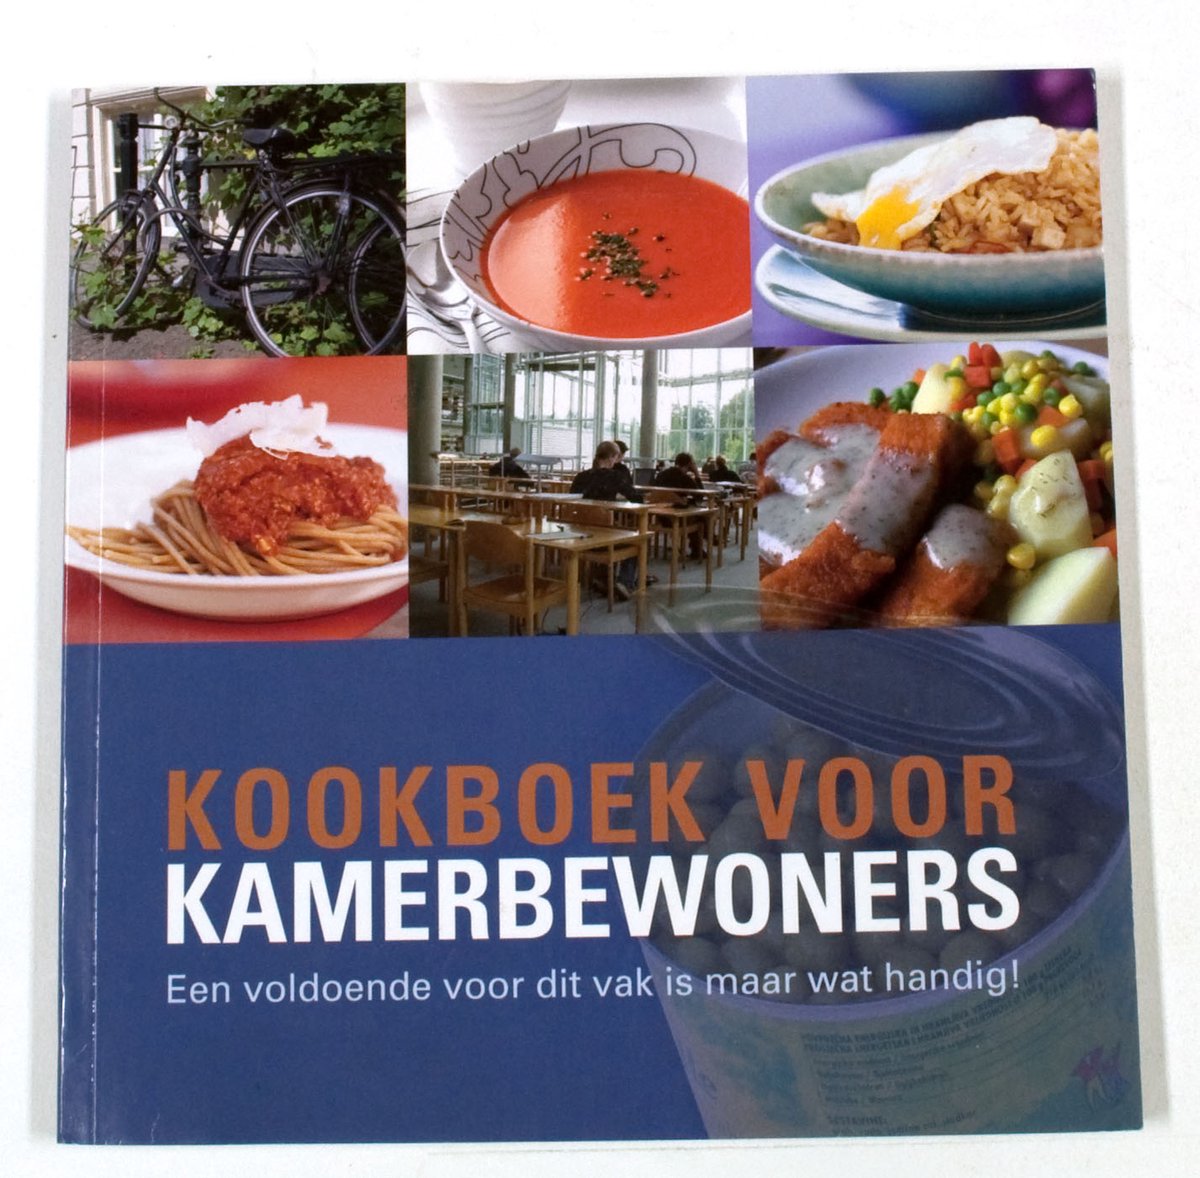 Kookboek voor kamerbewoners (klantenversie)